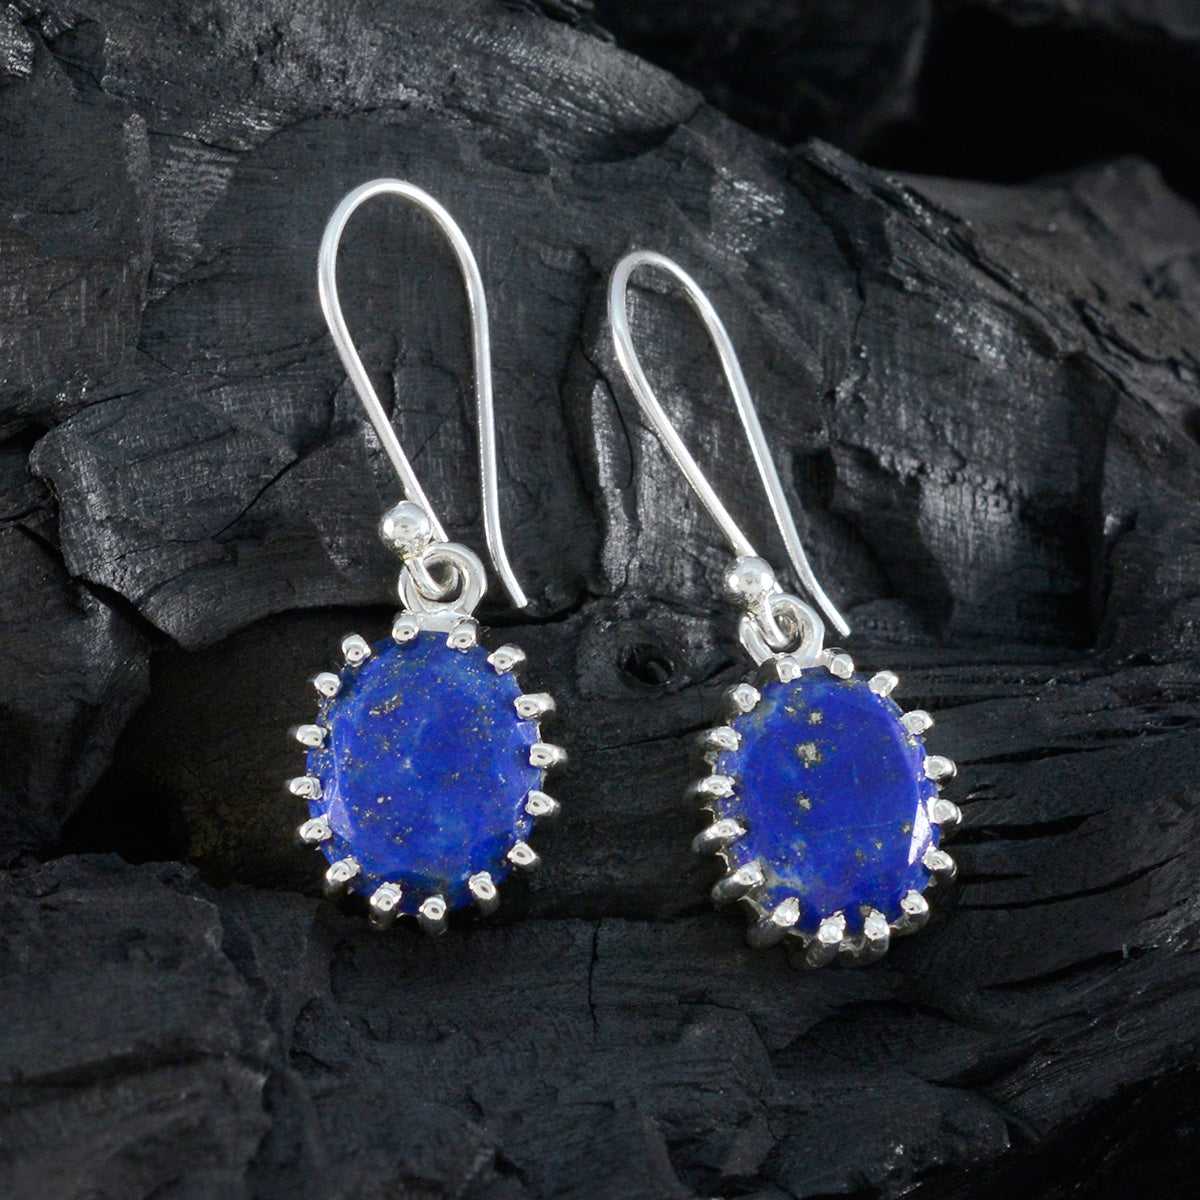 Riyo chaud 925 boucle d'oreille en argent sterling pour les femmes lapis lazuli boucle d'oreille réglage de la lunette boucle d'oreille bleue boucle d'oreille pendante